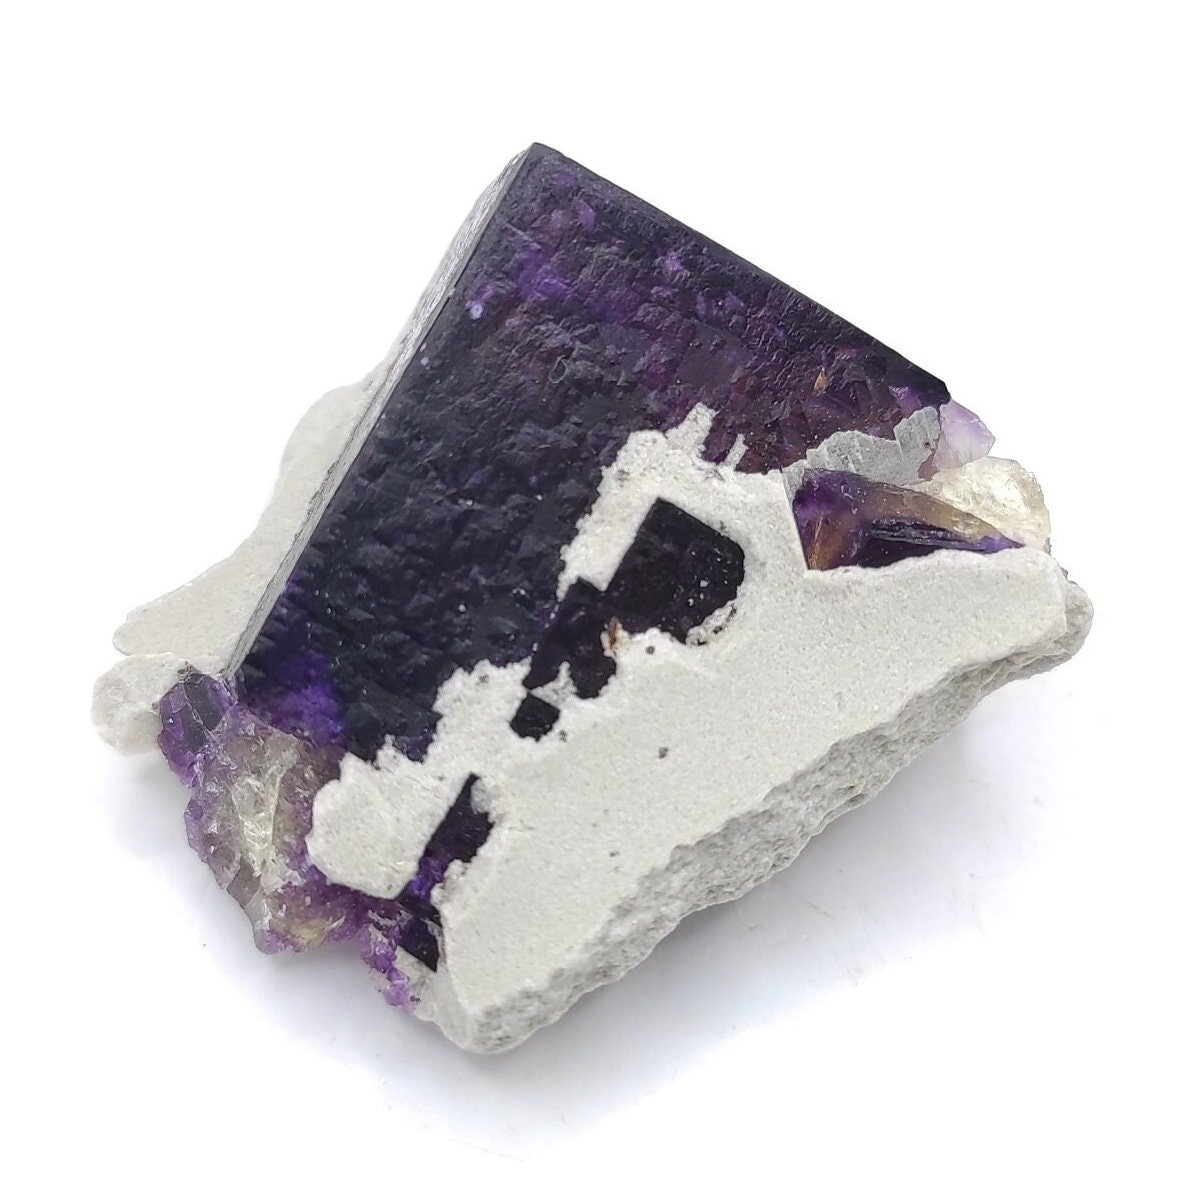 20g Illinois Fluorite Specimen - Purple Fluorite from Cave-in-Rock, Hardin County, Illinois - Natural Purple Fluorite Mineral Specimen